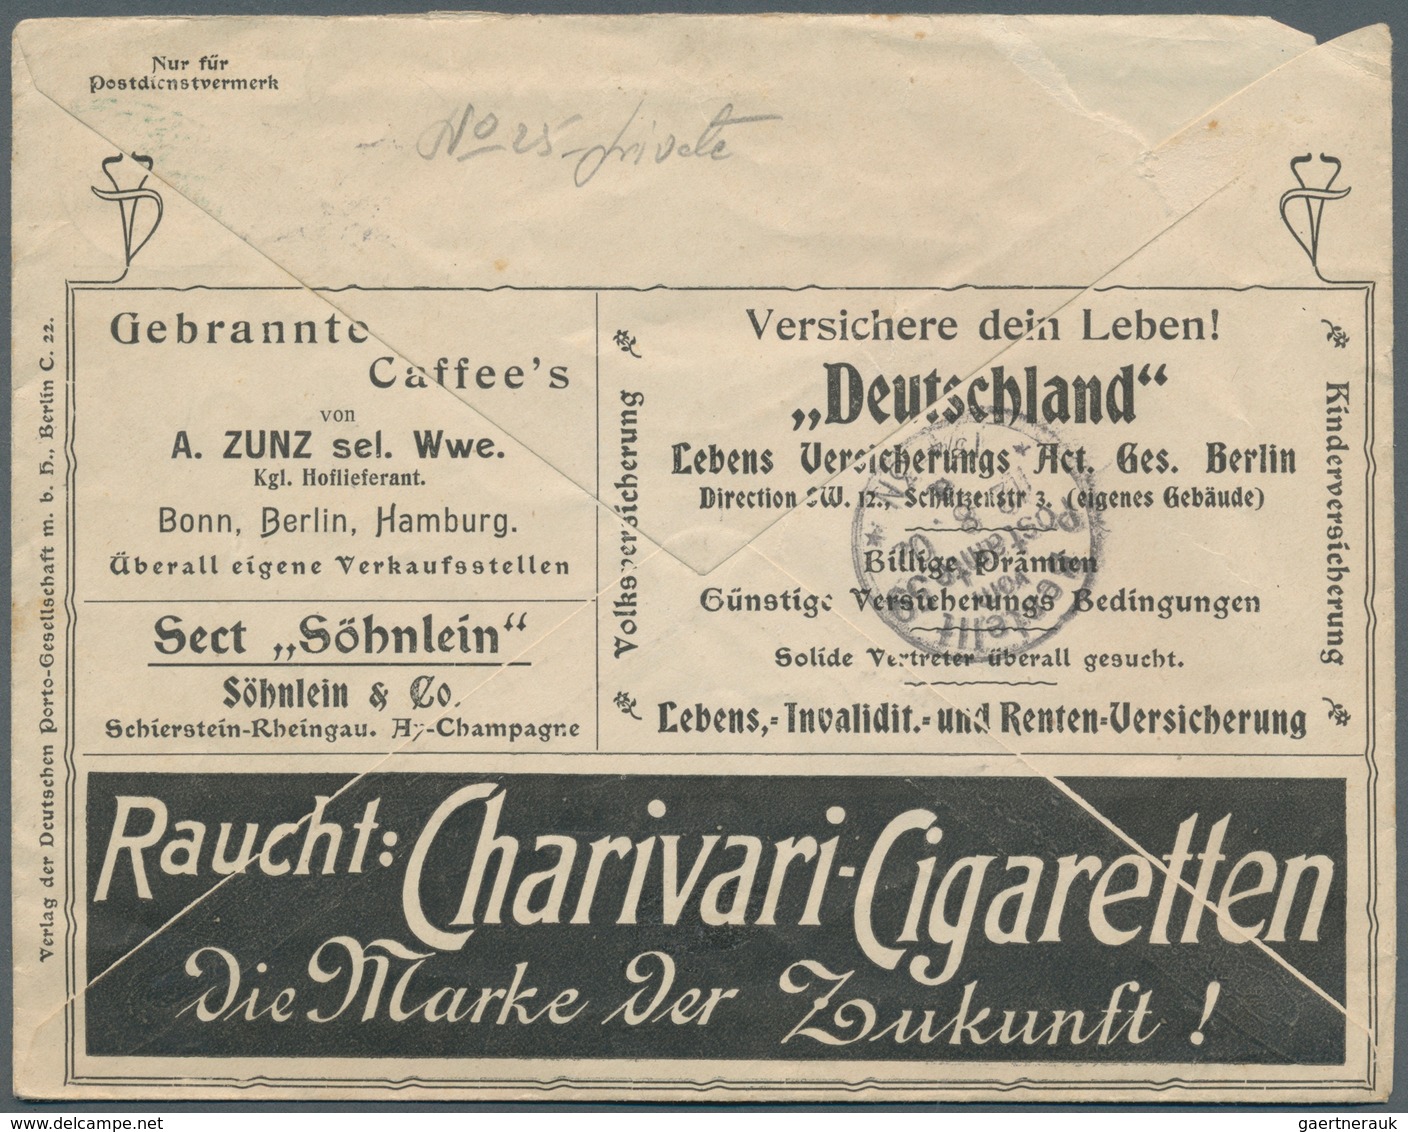 31028 Deutschland: 1864/1949, Lot von sechs besseren Belegen, dabei Altdeuschland, drei Privat-Ganzsachen